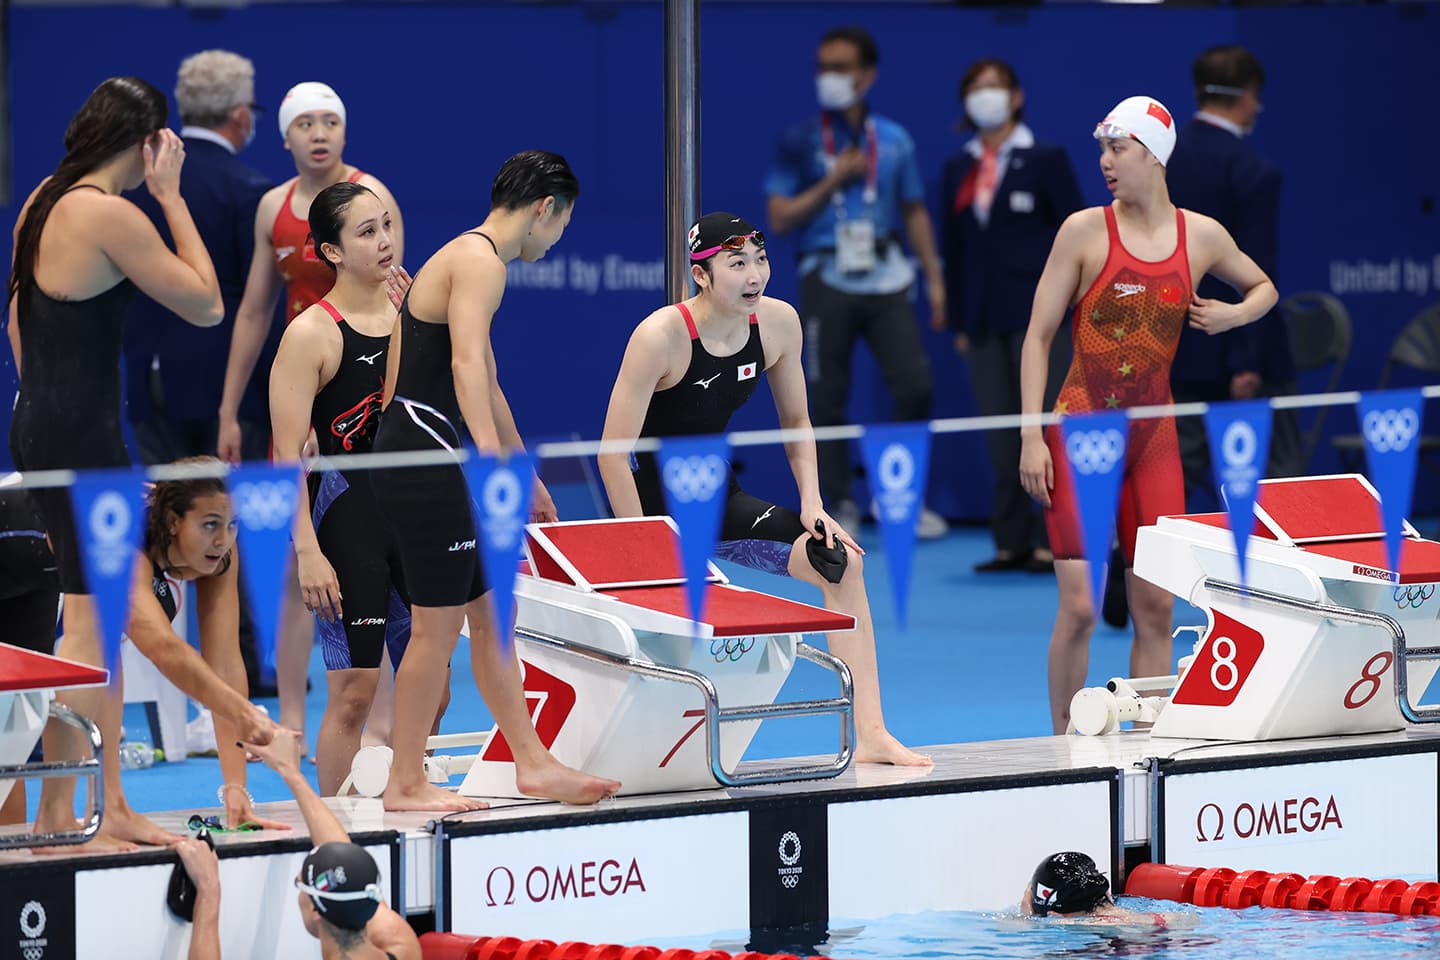 東京2020大会競泳女子400mメドレーリレー決勝